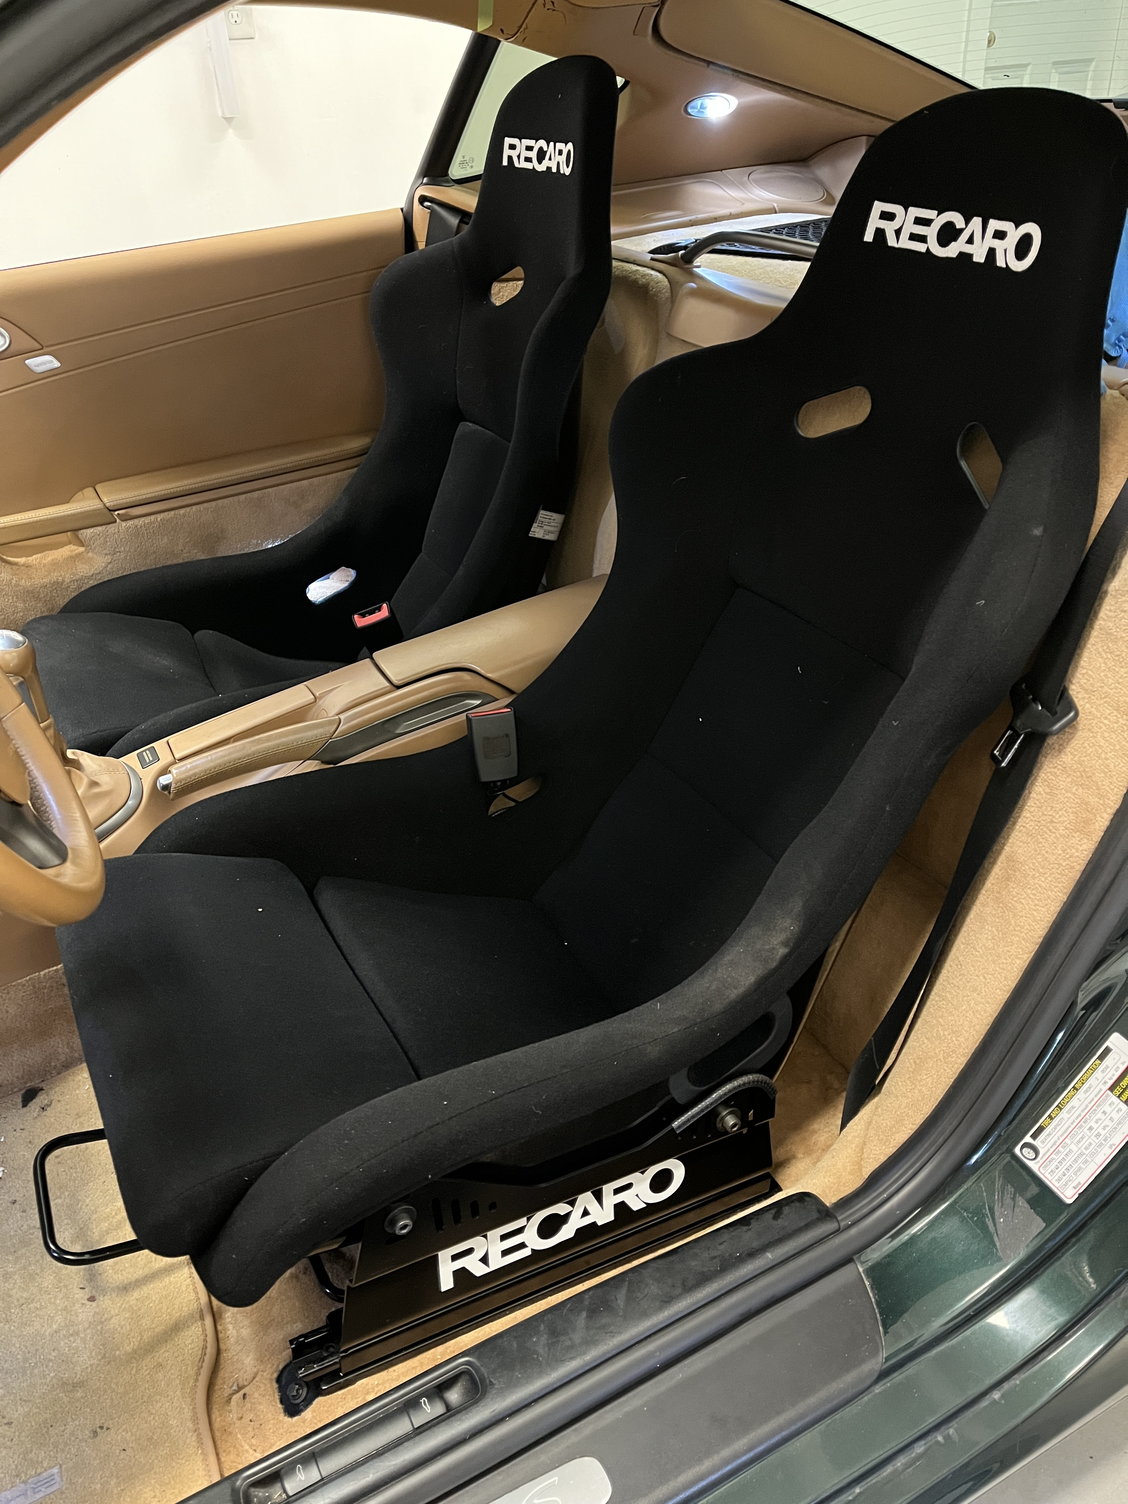 Recaro Pole Position Seat Install - Rennlist - Porsche Discussion Forums